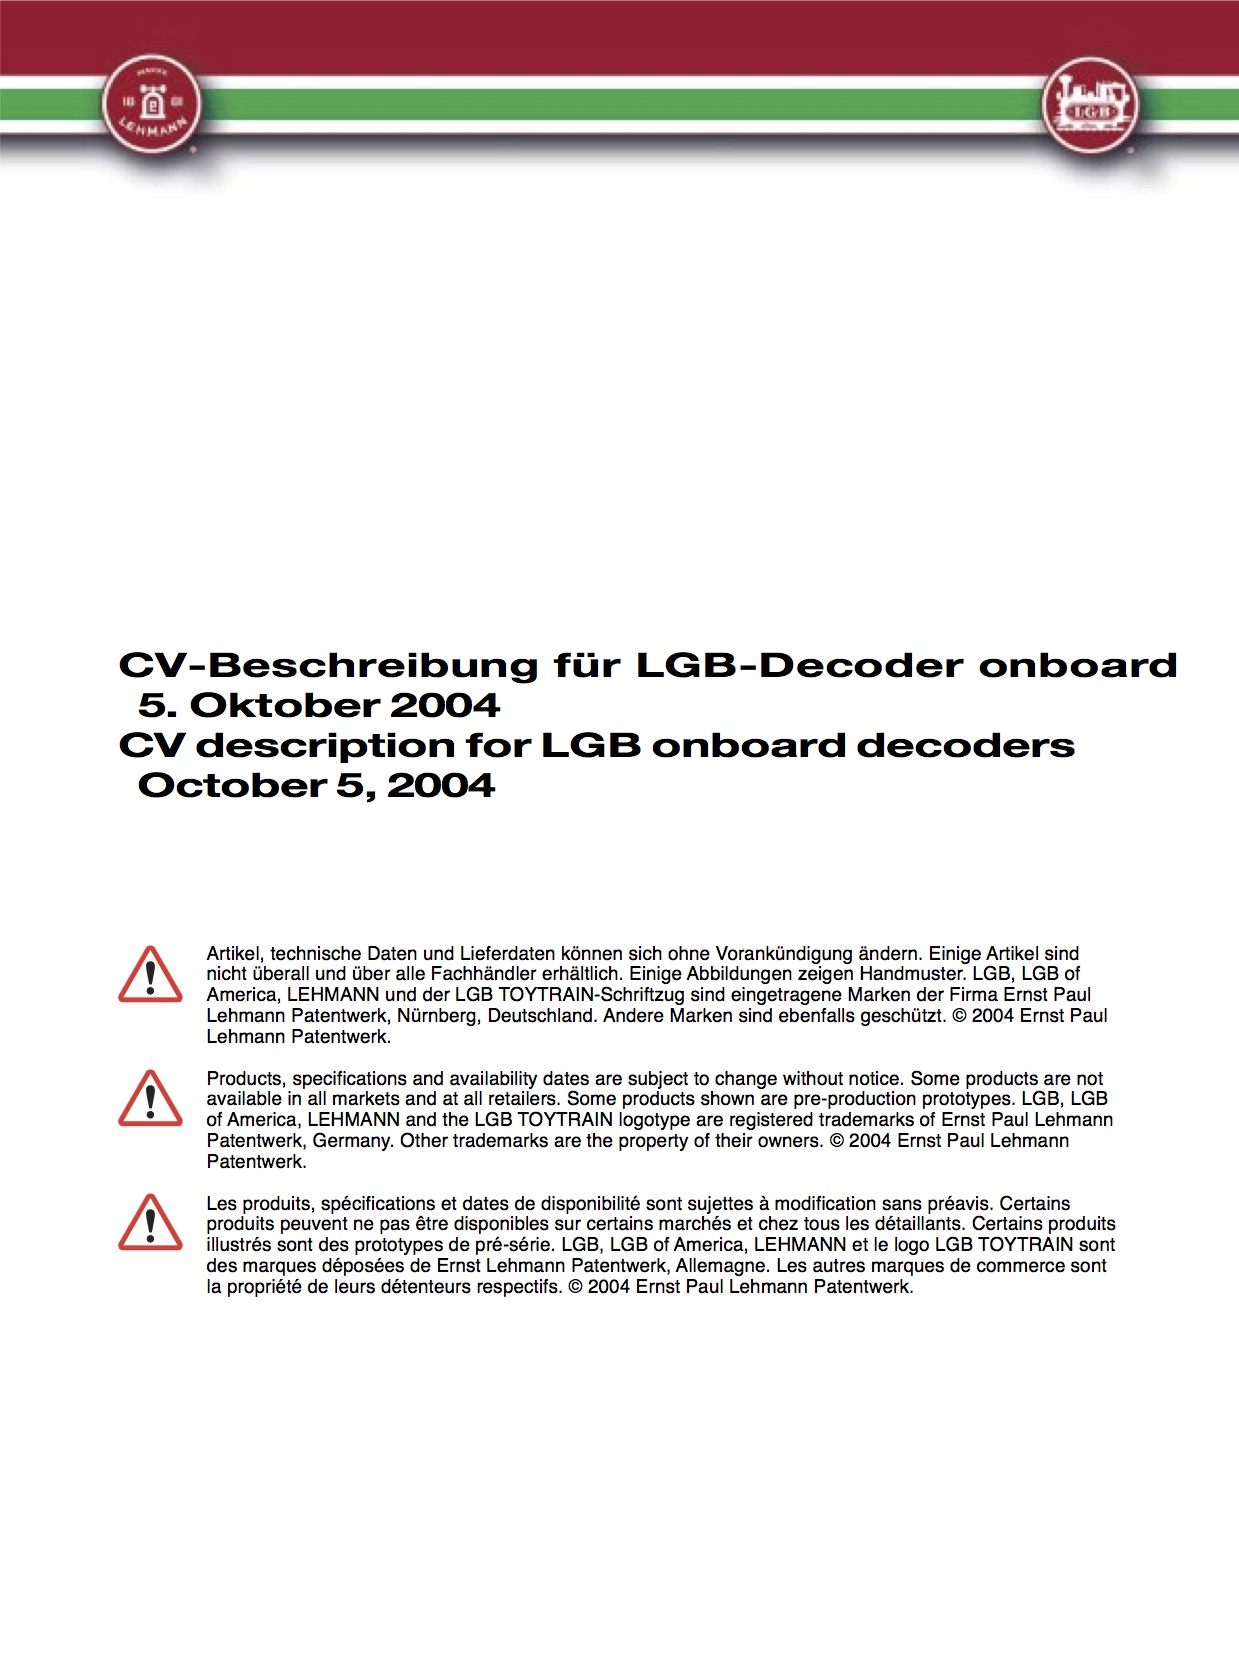 LGB White Paper 2003 - Decoder-on-Board CV Definition, Deutsch/English